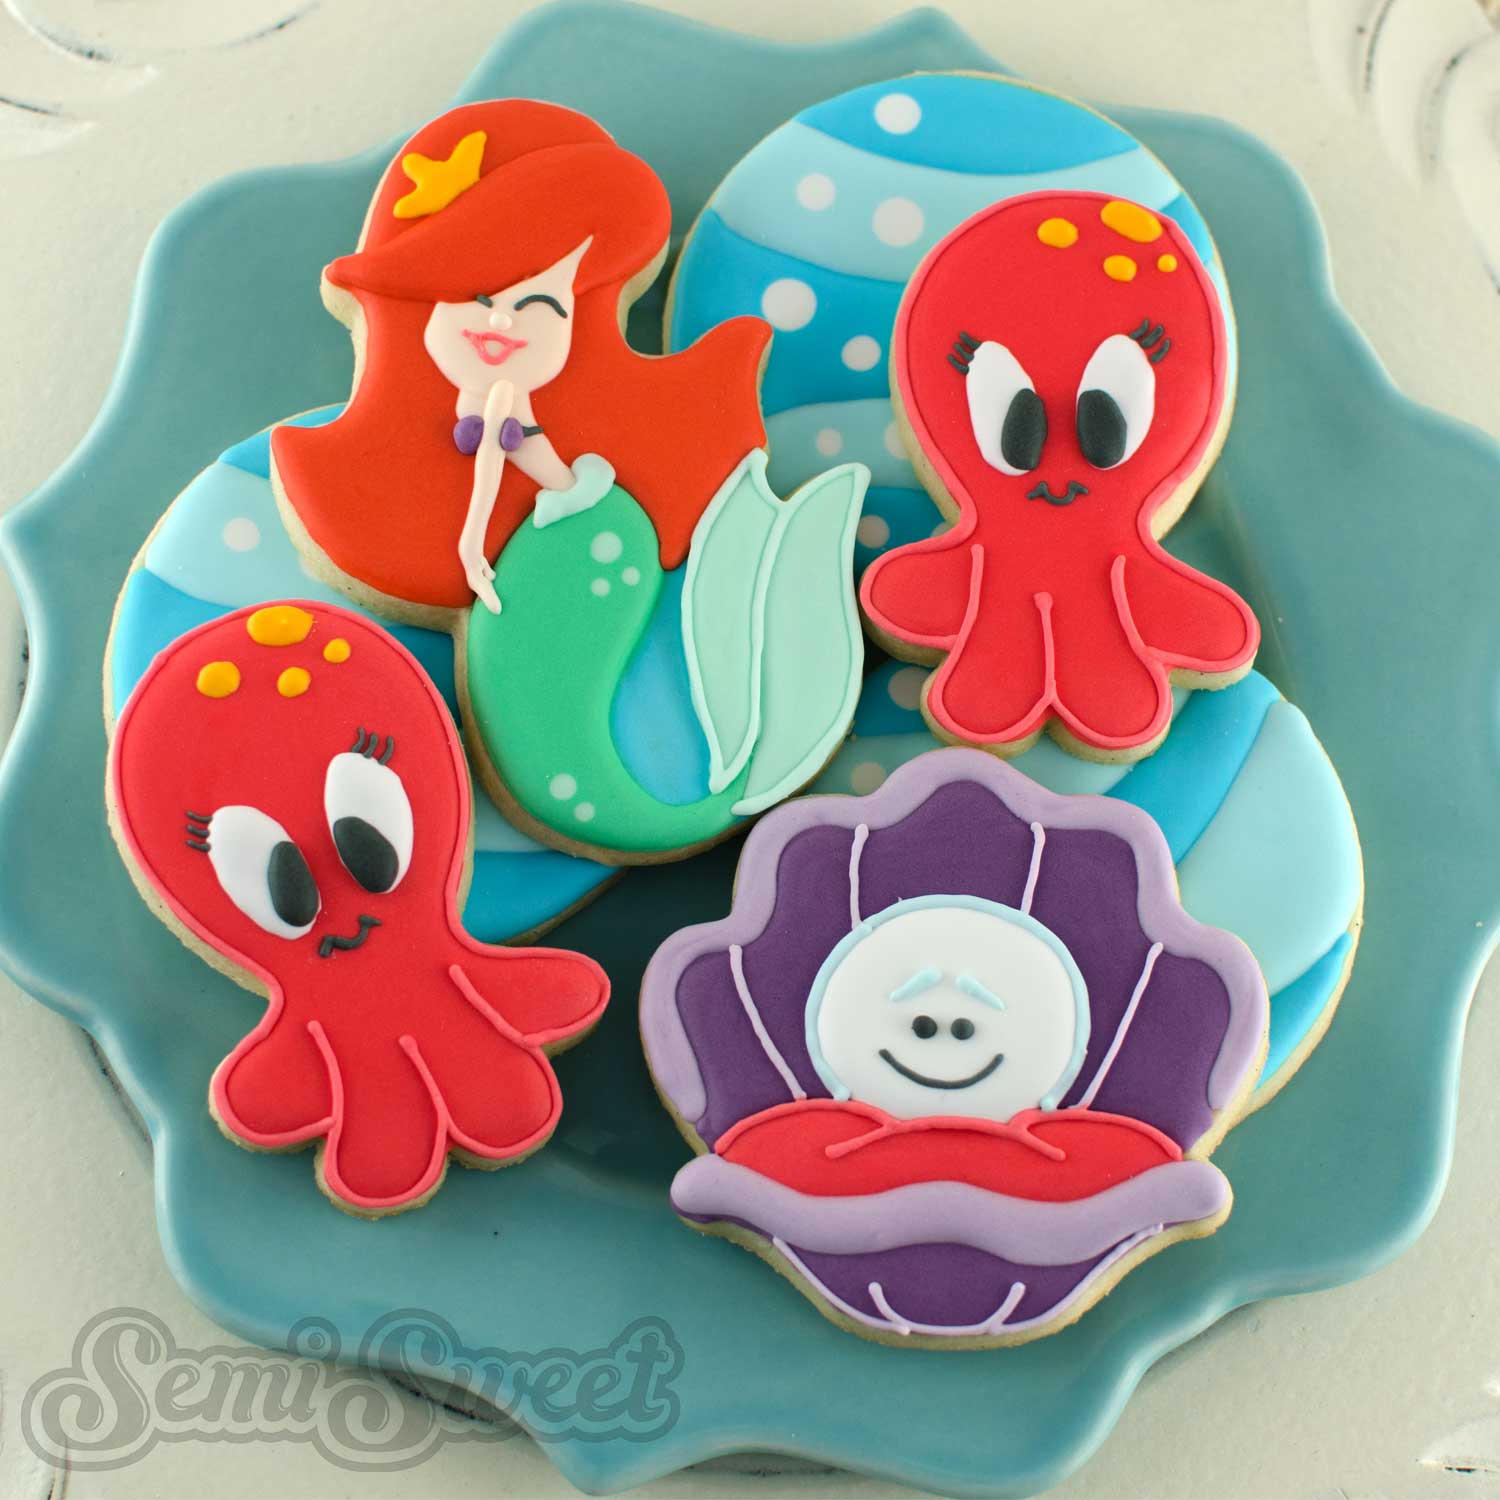 mermaid_cookies_plate